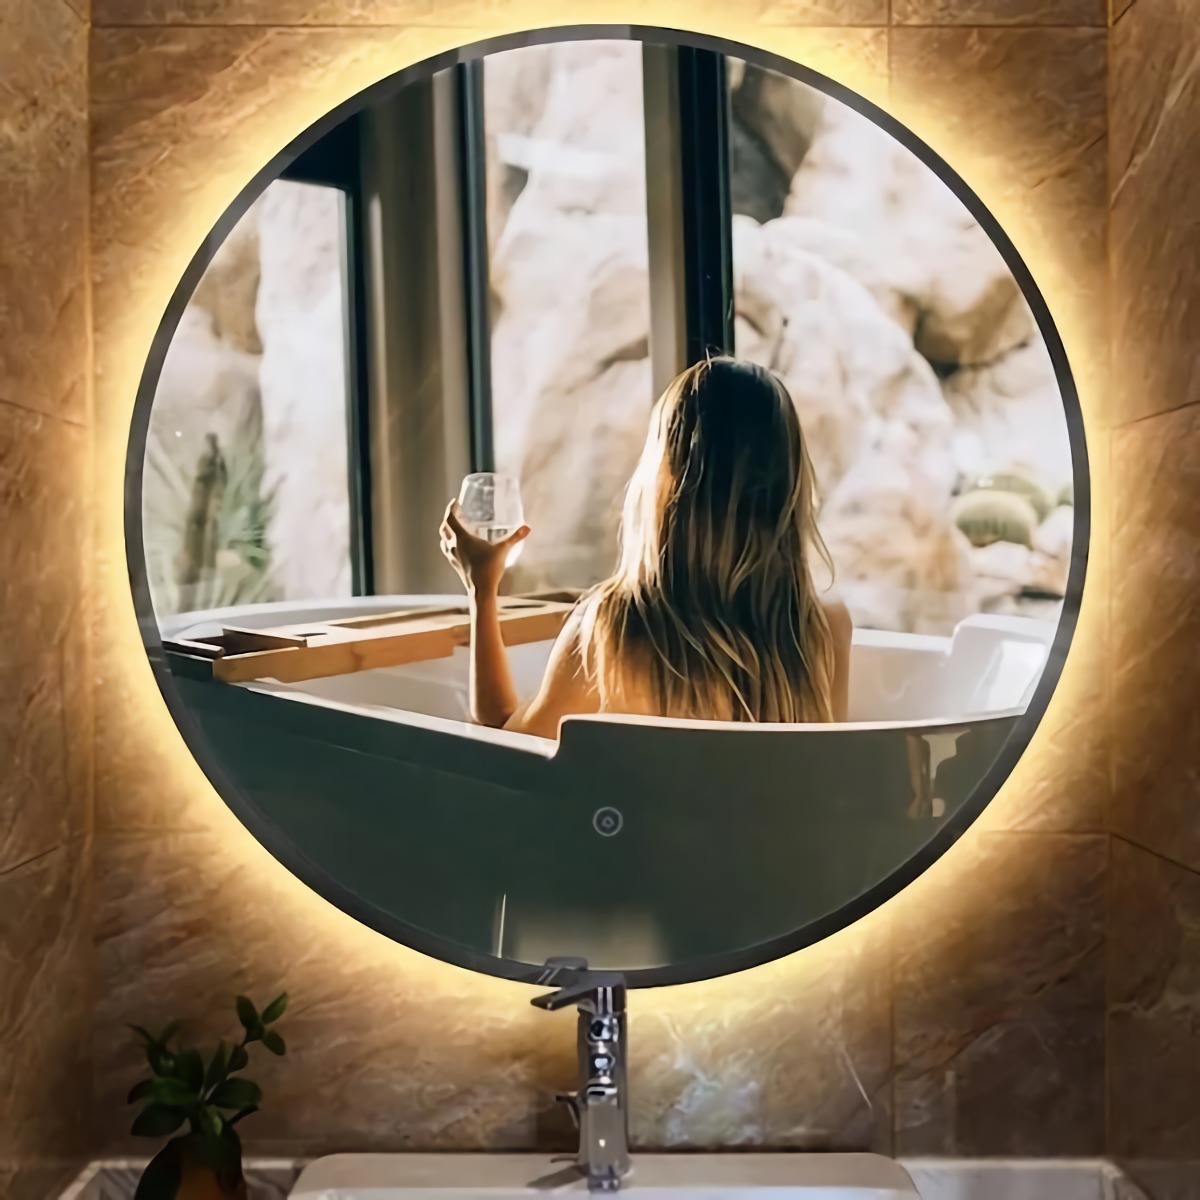 specchio torondo del bagno come pulire il bagno bene